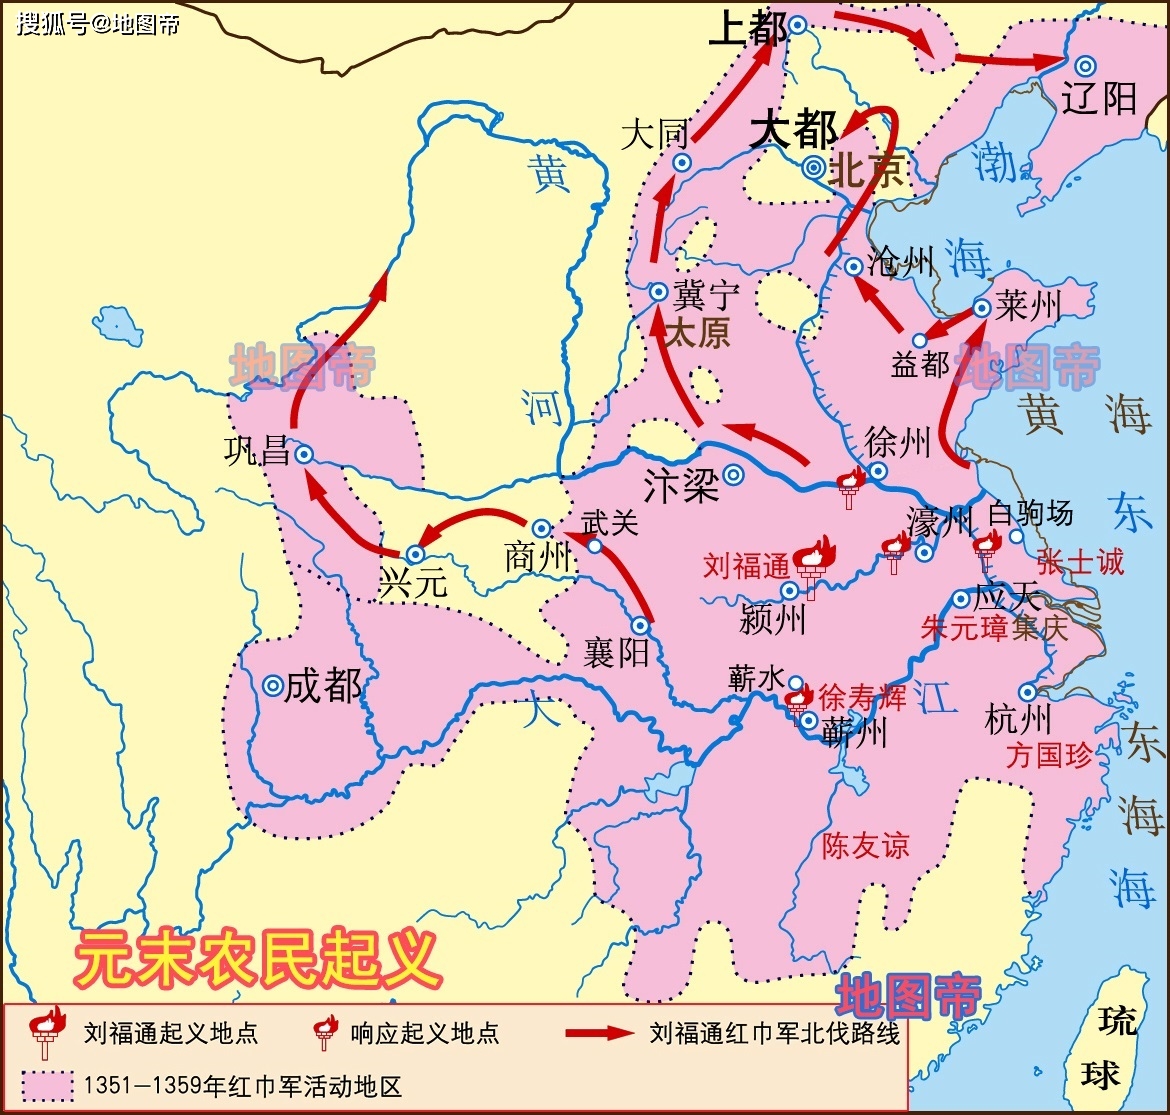 原创钓鱼城之战,蒙古帝国西征,元朝简史(11幅地图)